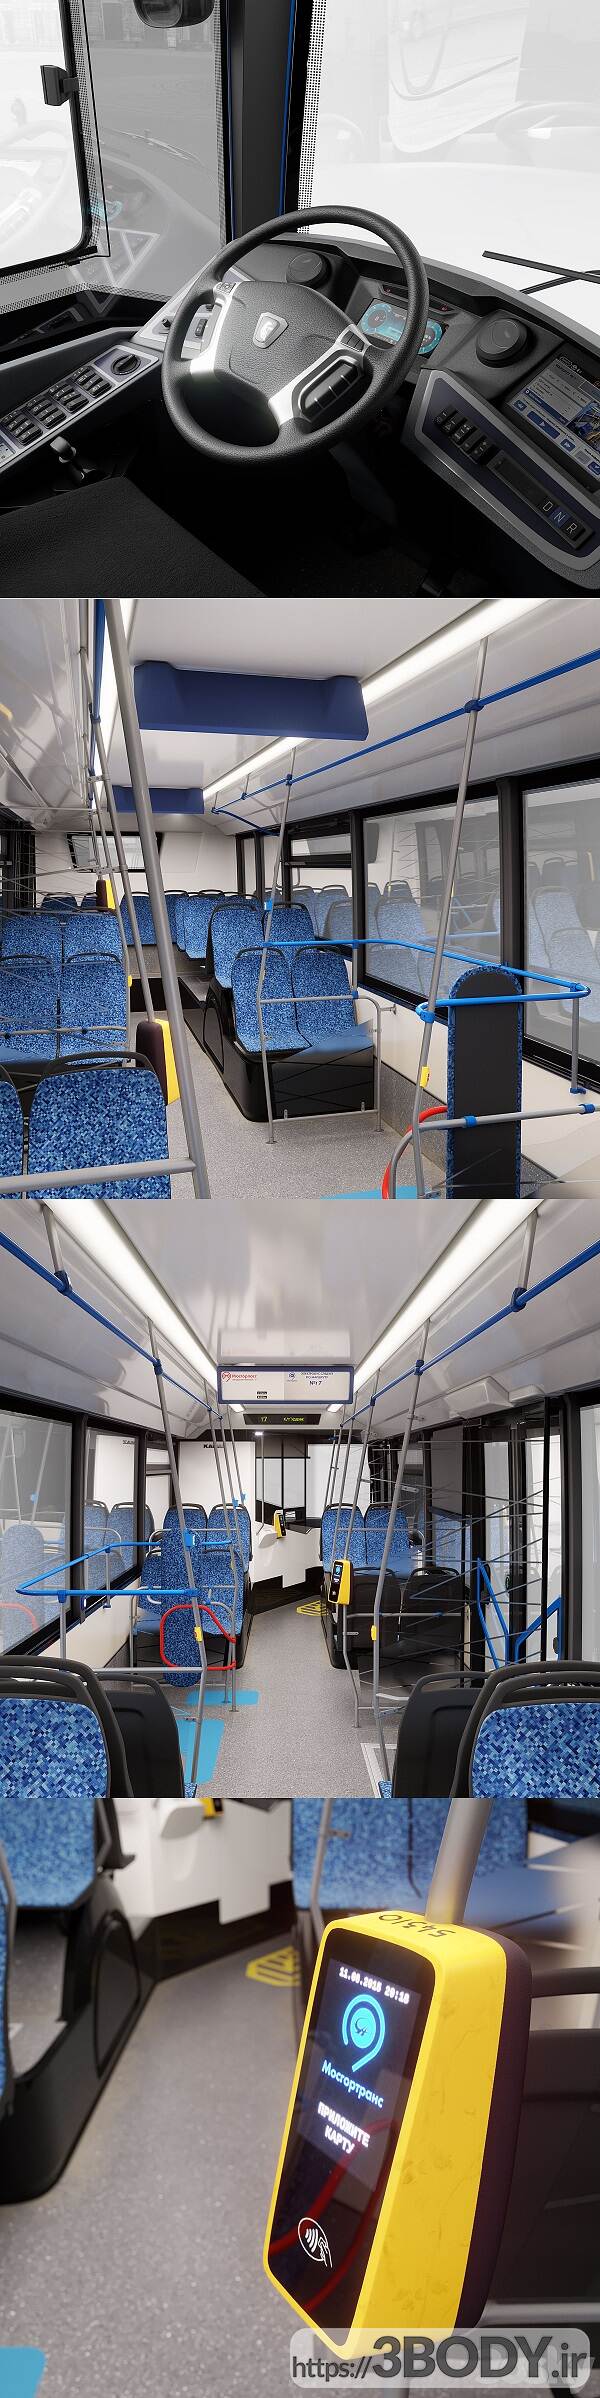 مدل سه بعدی اتوبوس برقی Kamaz 6282 عکس 5